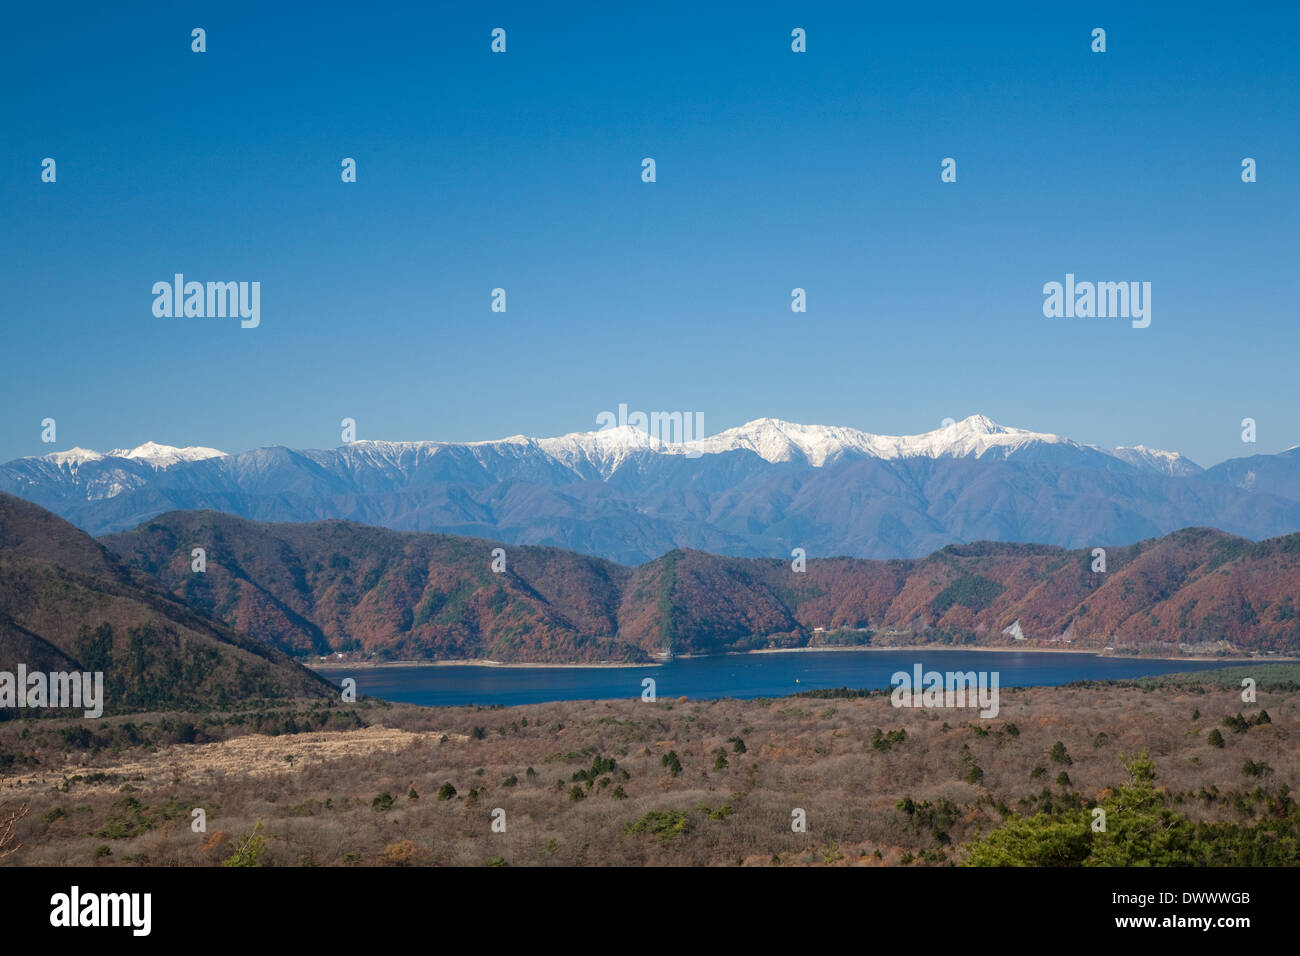 Lake Motosu and snowcapped mountain range, Yamanashi, Japan Stock Photo